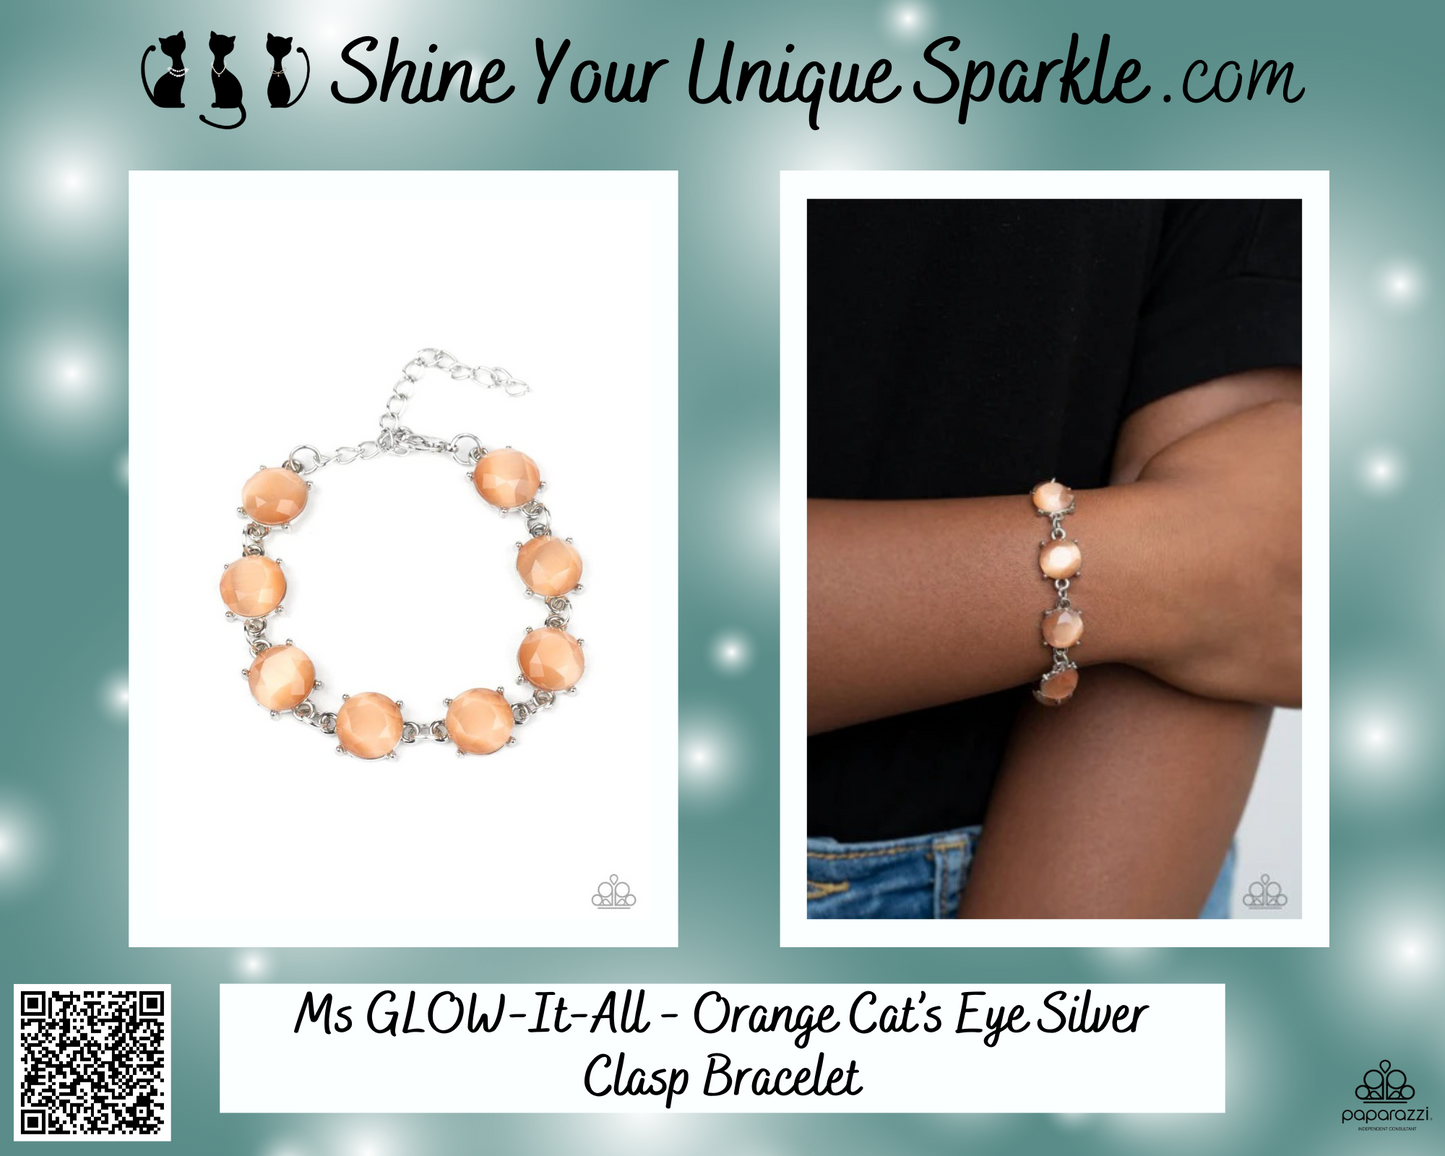 Ms Glow-It-All - Orange Cat's Eye Silver Clasp Bracelet